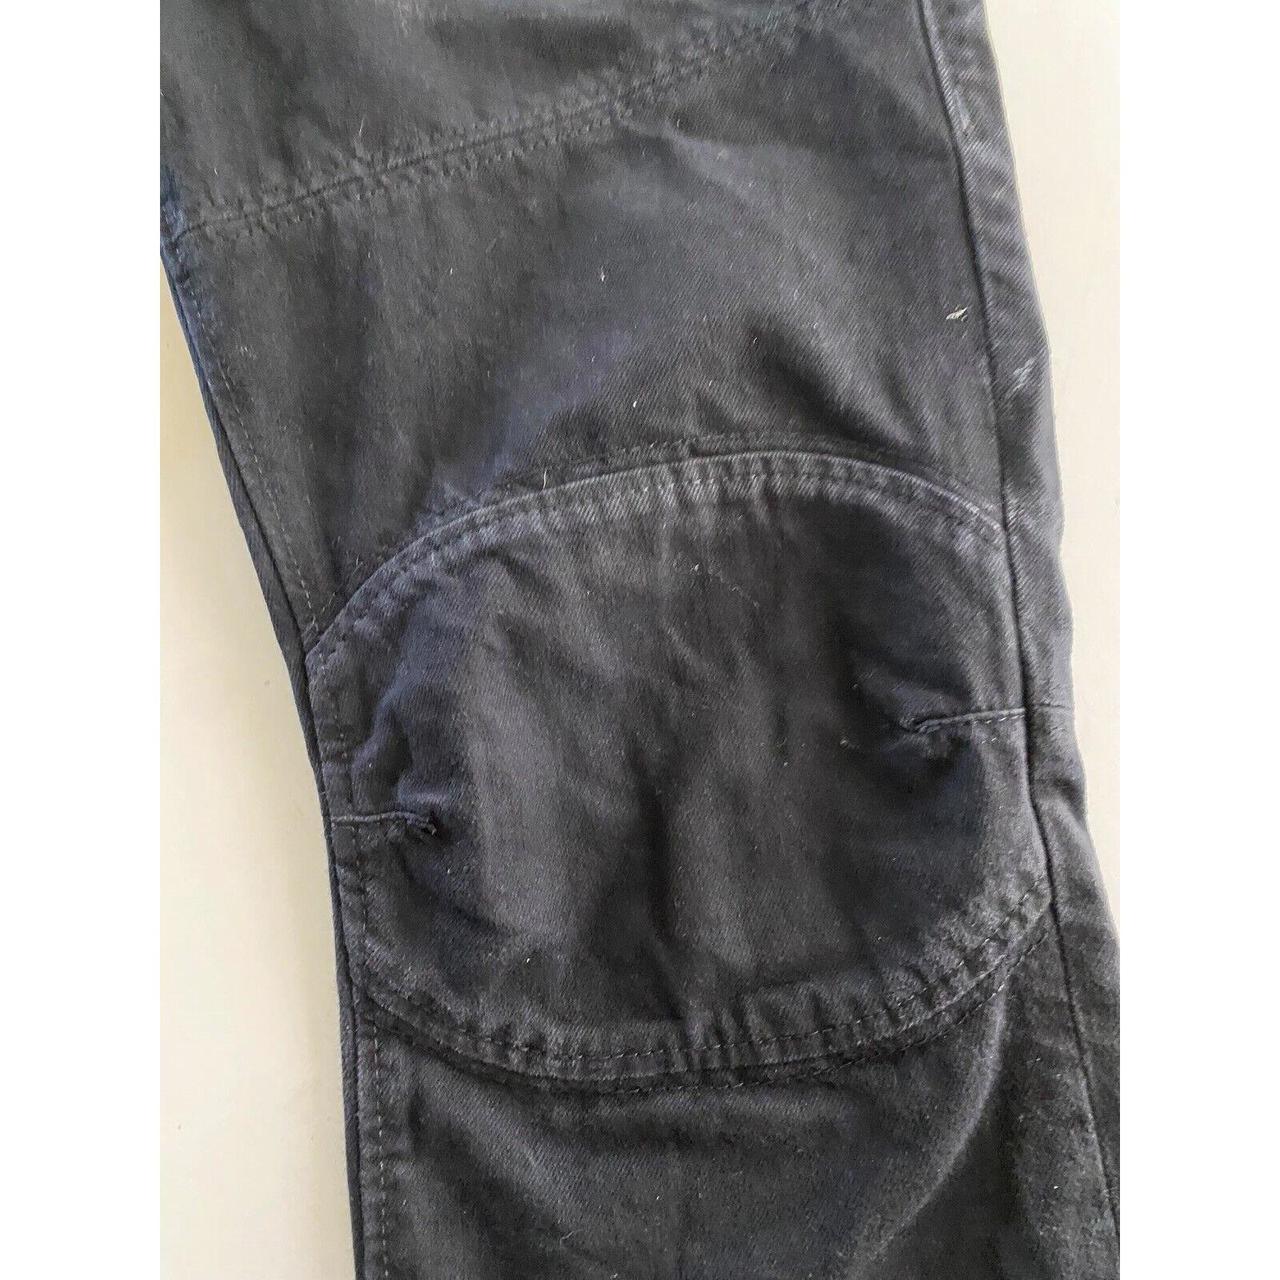 True Religion Denim Jeans Pants 36 x 33 Size:... - Depop